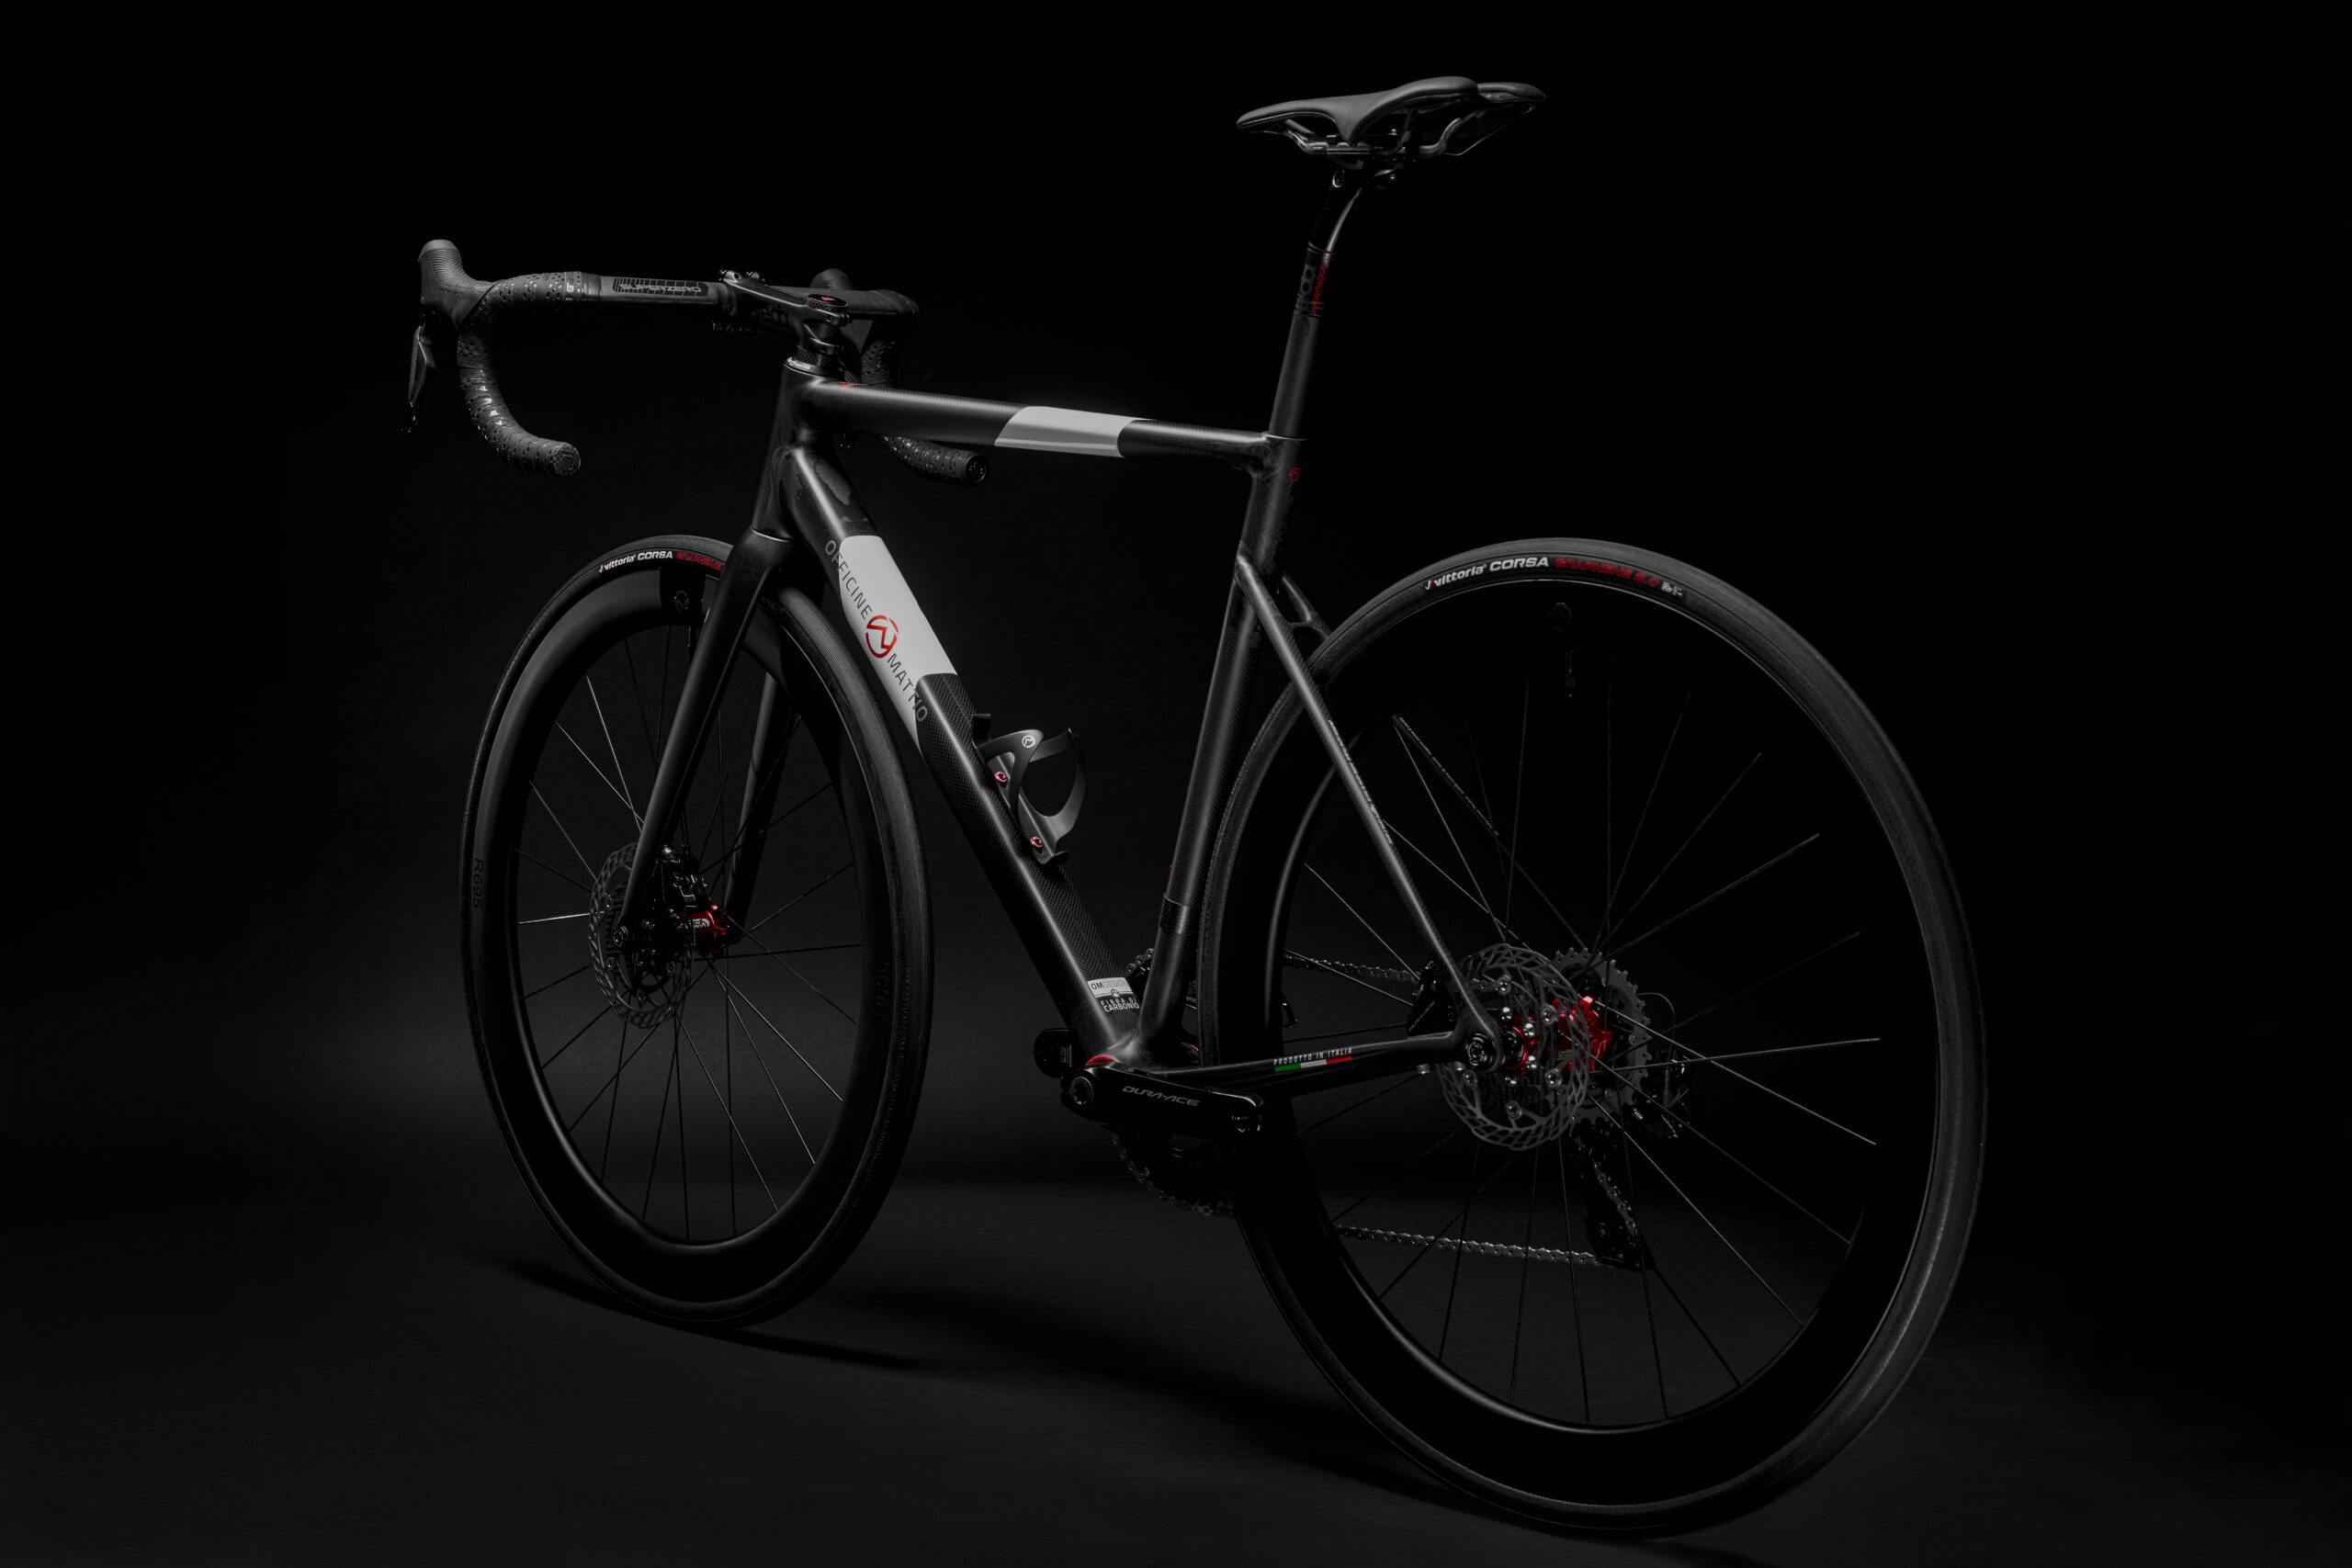 Retro Bicicletta Officine Mattio modello Lemma 2.0 colorazione nero e bianco